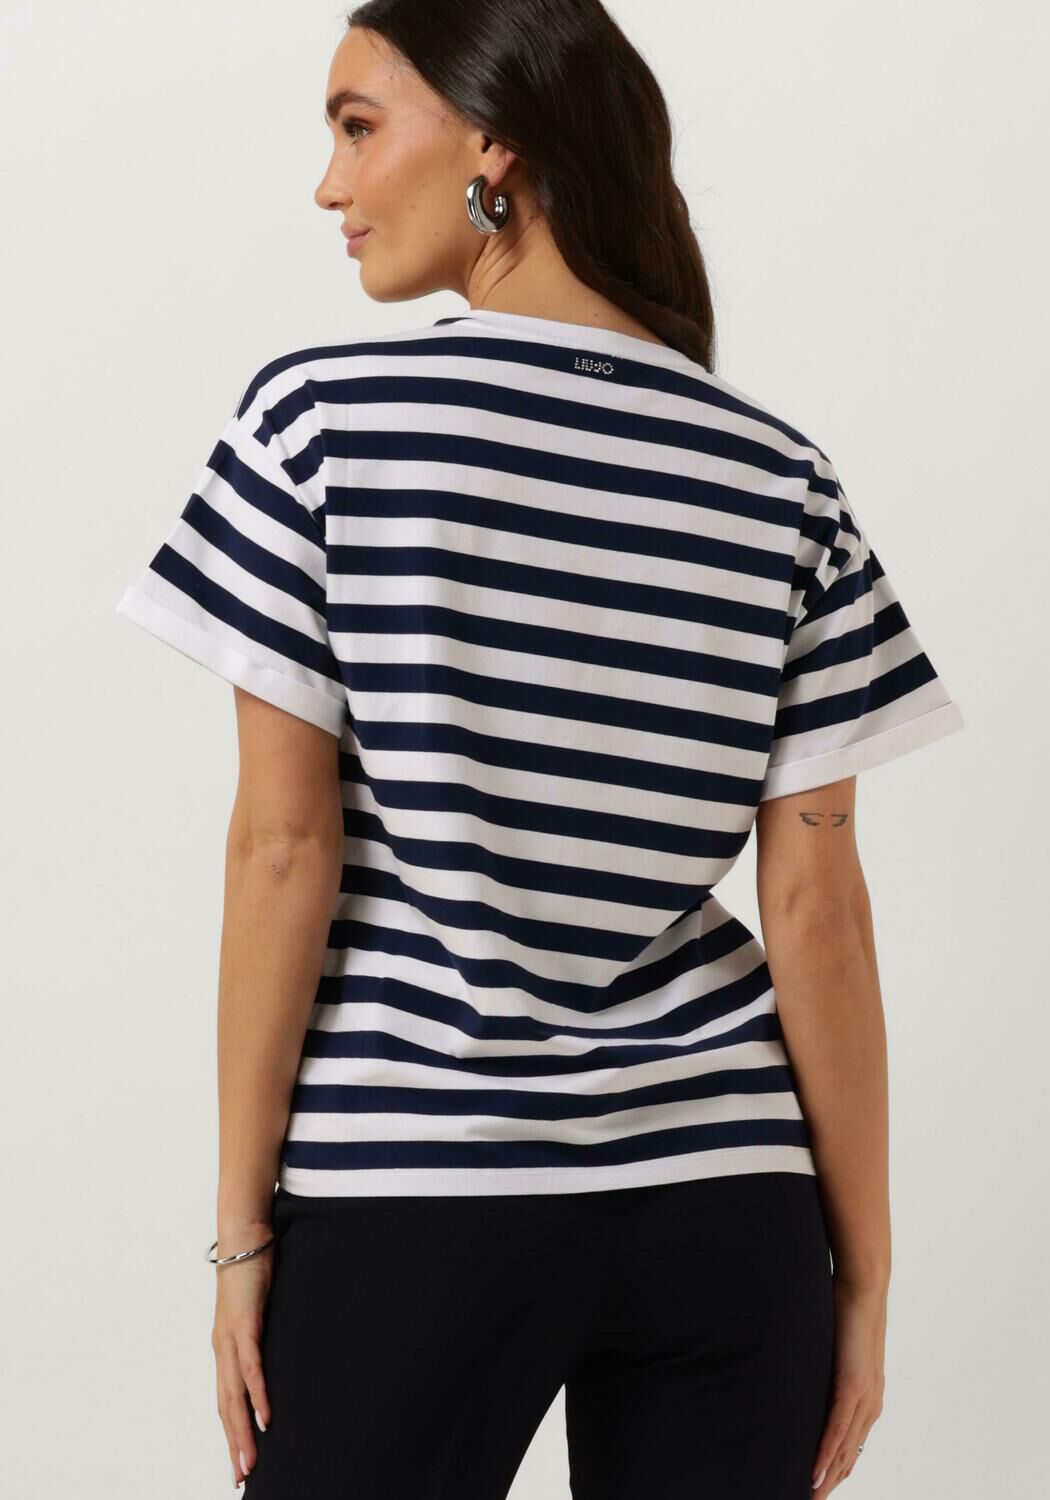 LIU JO Dames Tops & T-shirts J.striped T-shirt Blauw wit Gestreept